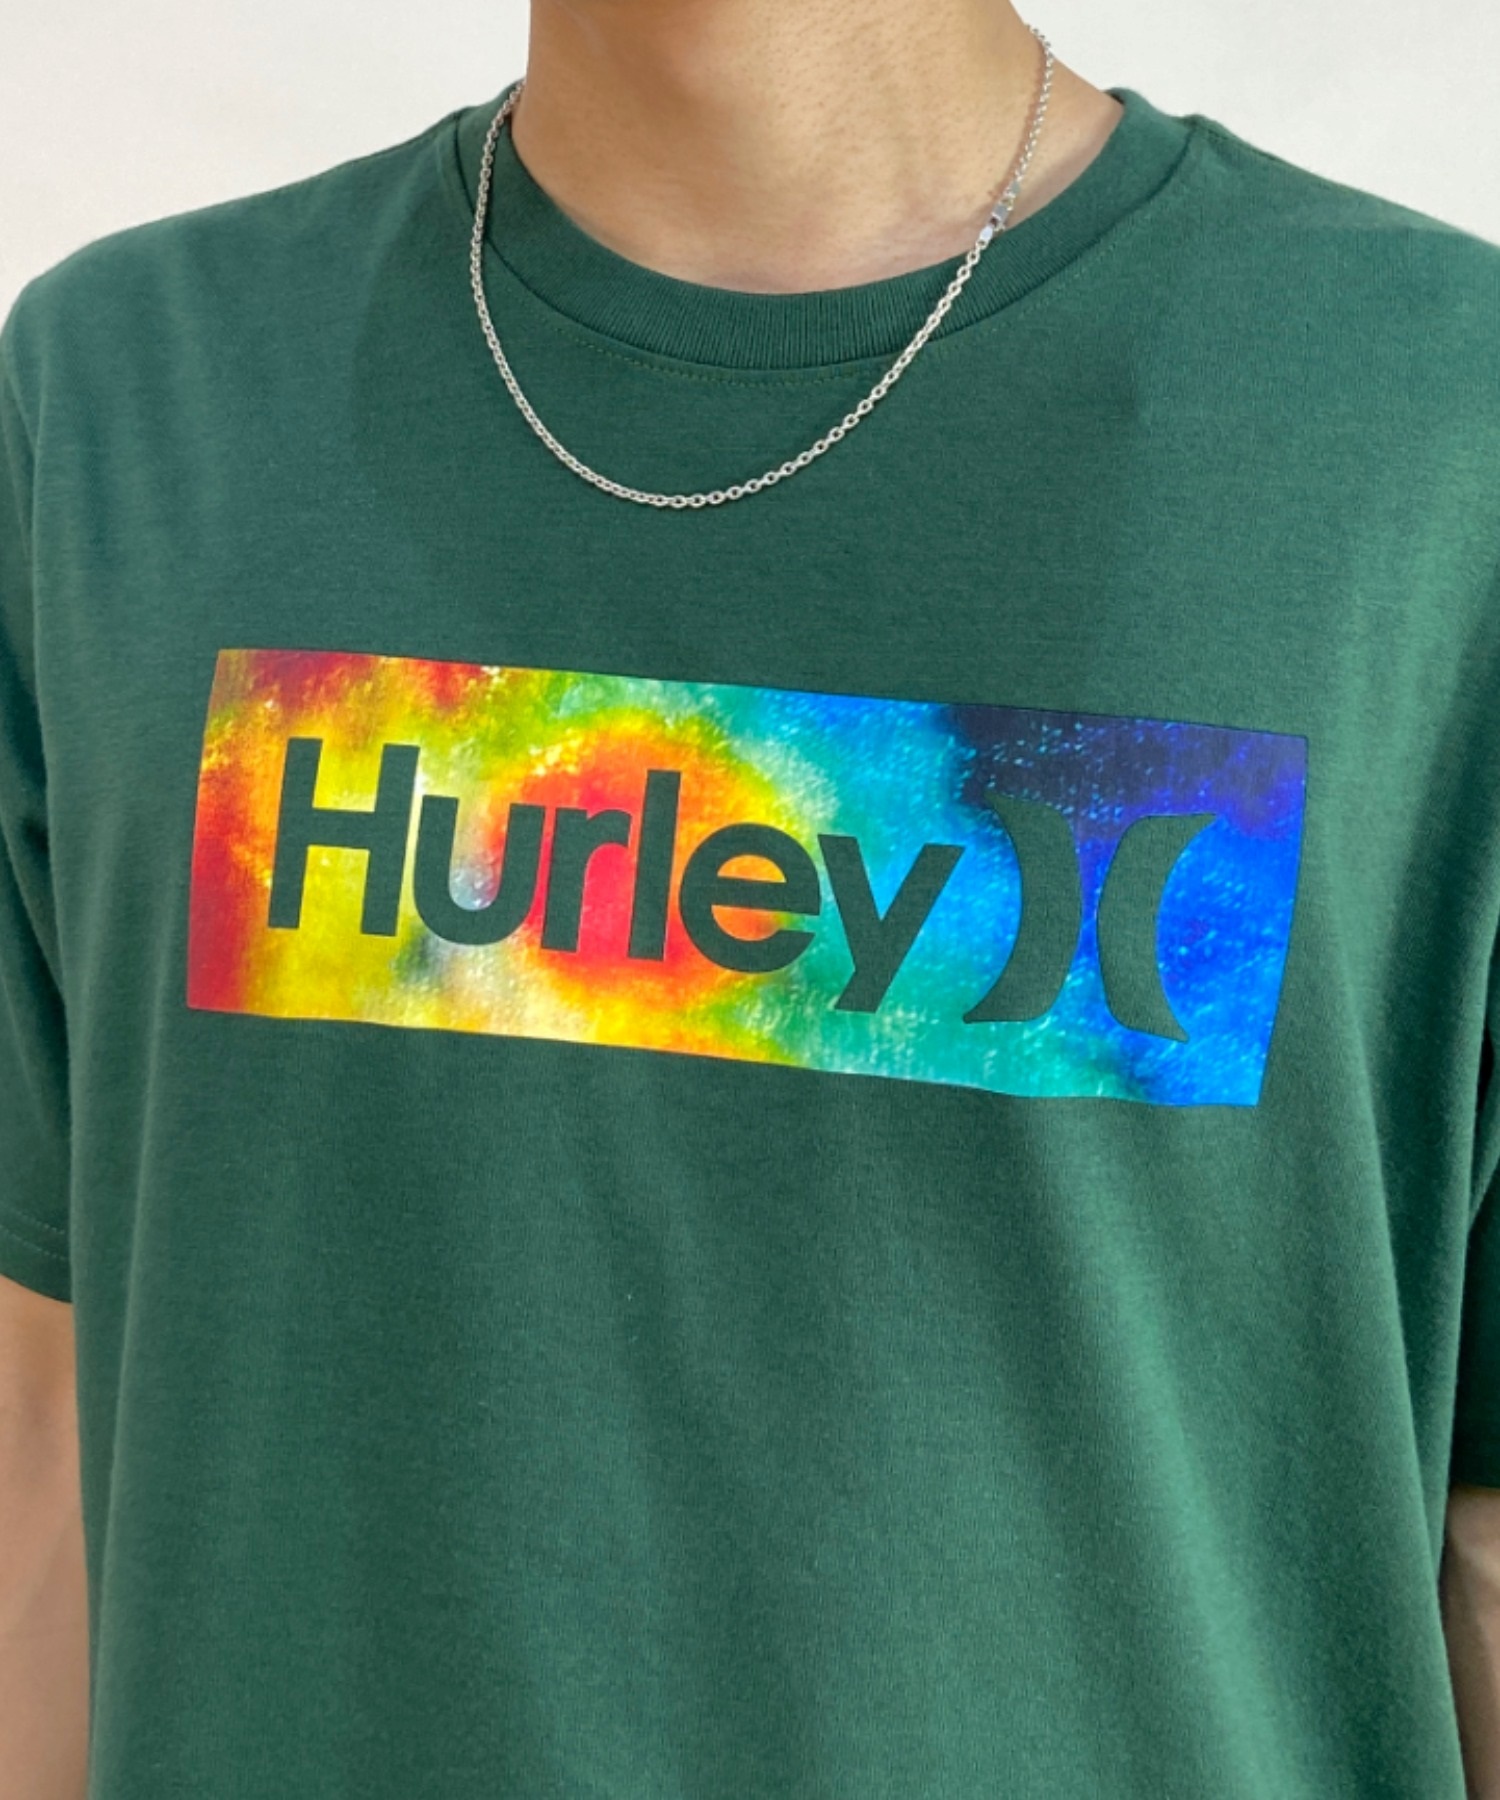 Hurley ハーレー MSS2200052 メンズ 半袖 Tシャツ ブランドロゴ バックプリント ムラサキスポーツ限定(DGRN-S)